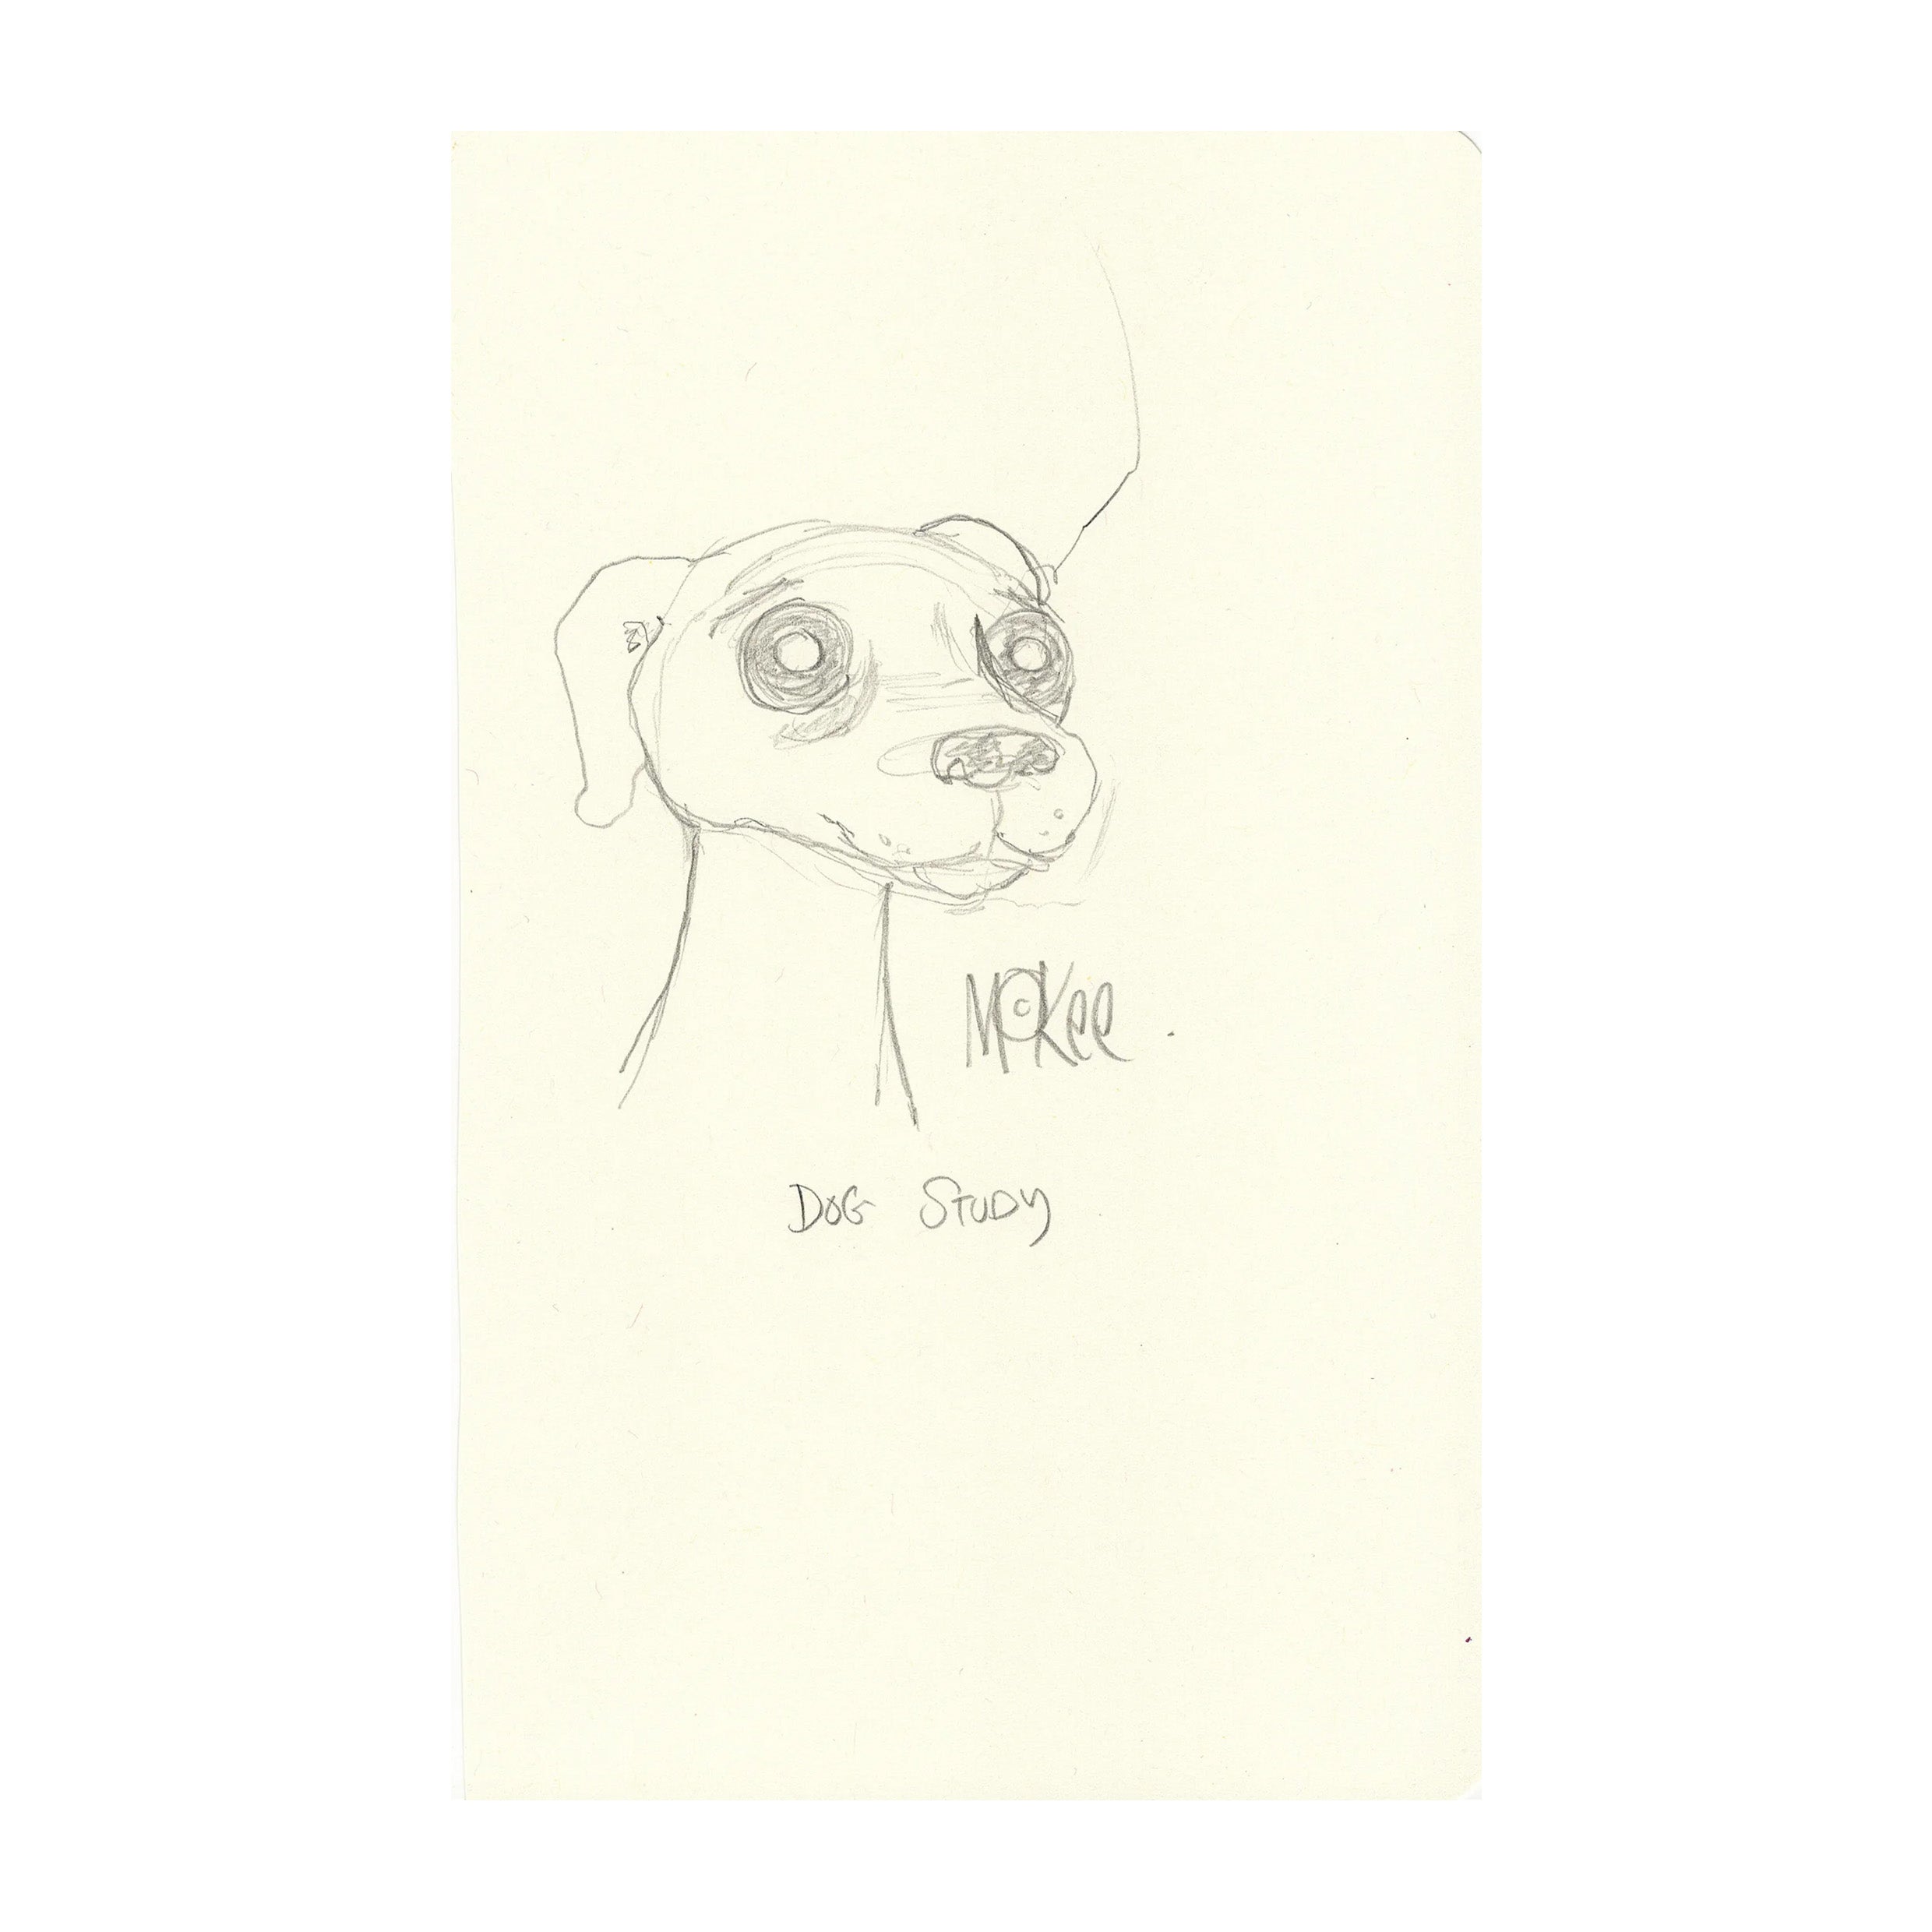 Dog Study - Original Sketch